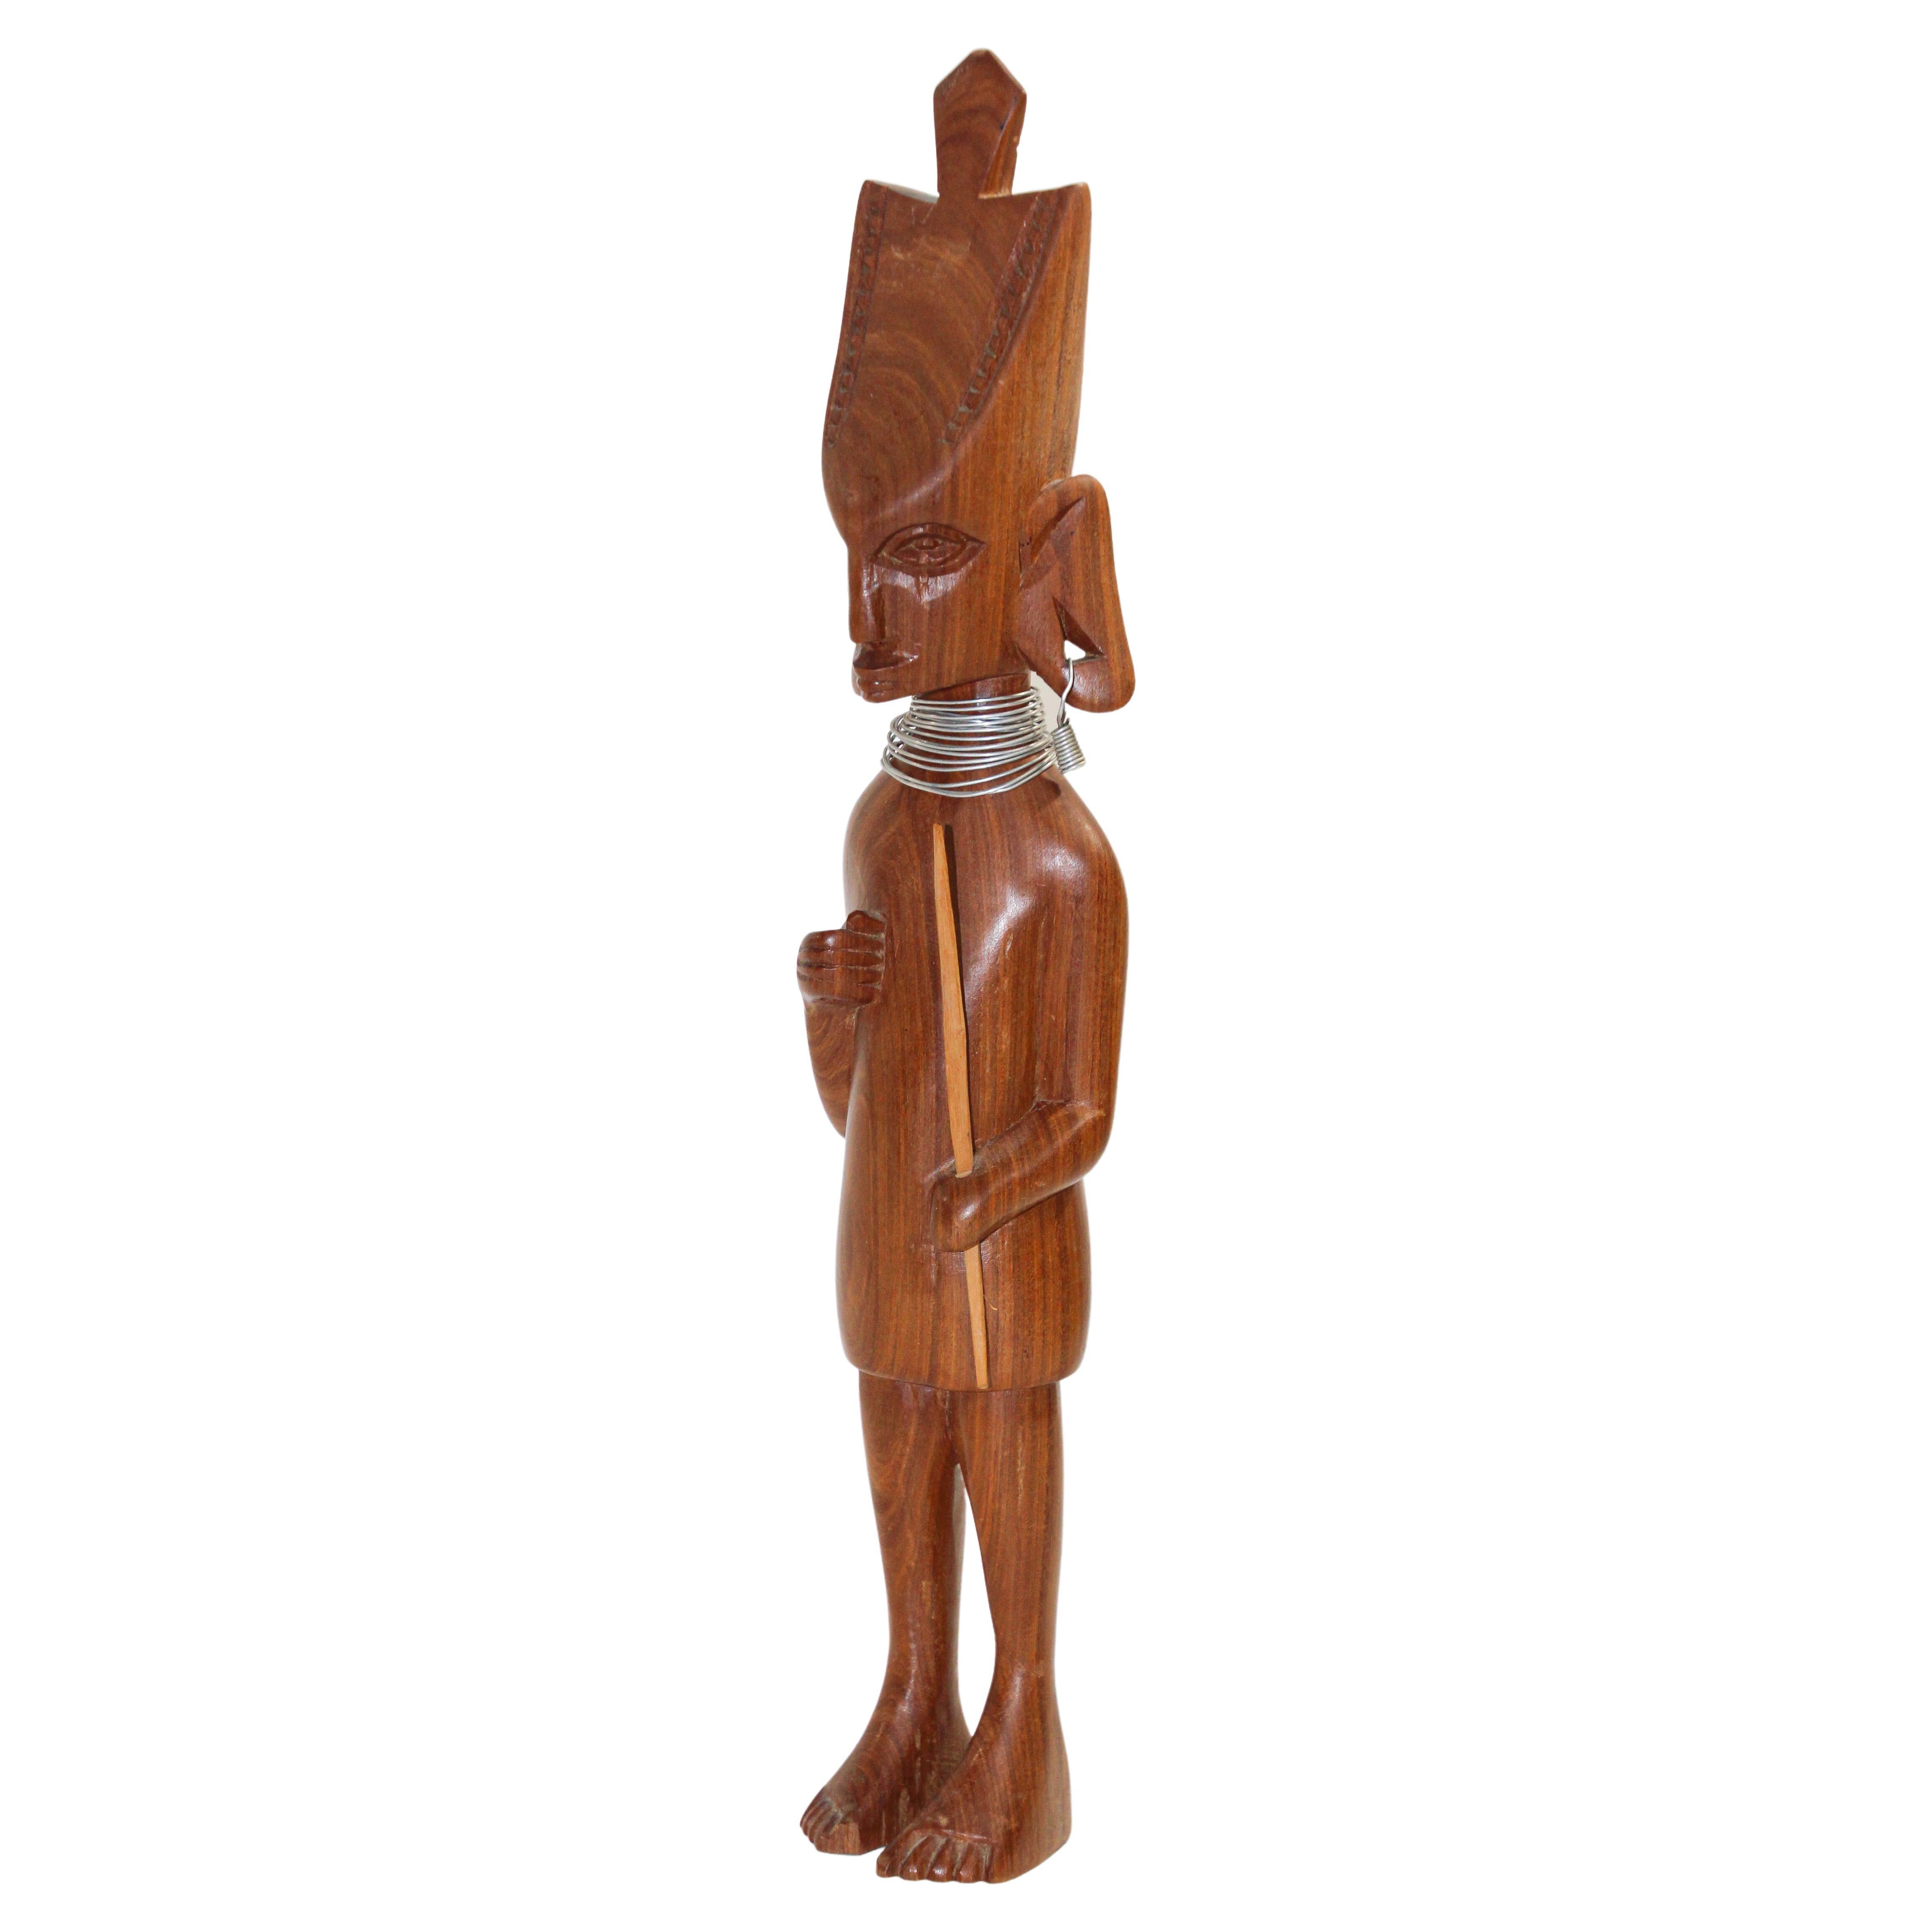 Antique African Tribal Man Sculpture African Tribal Art Man Figurine